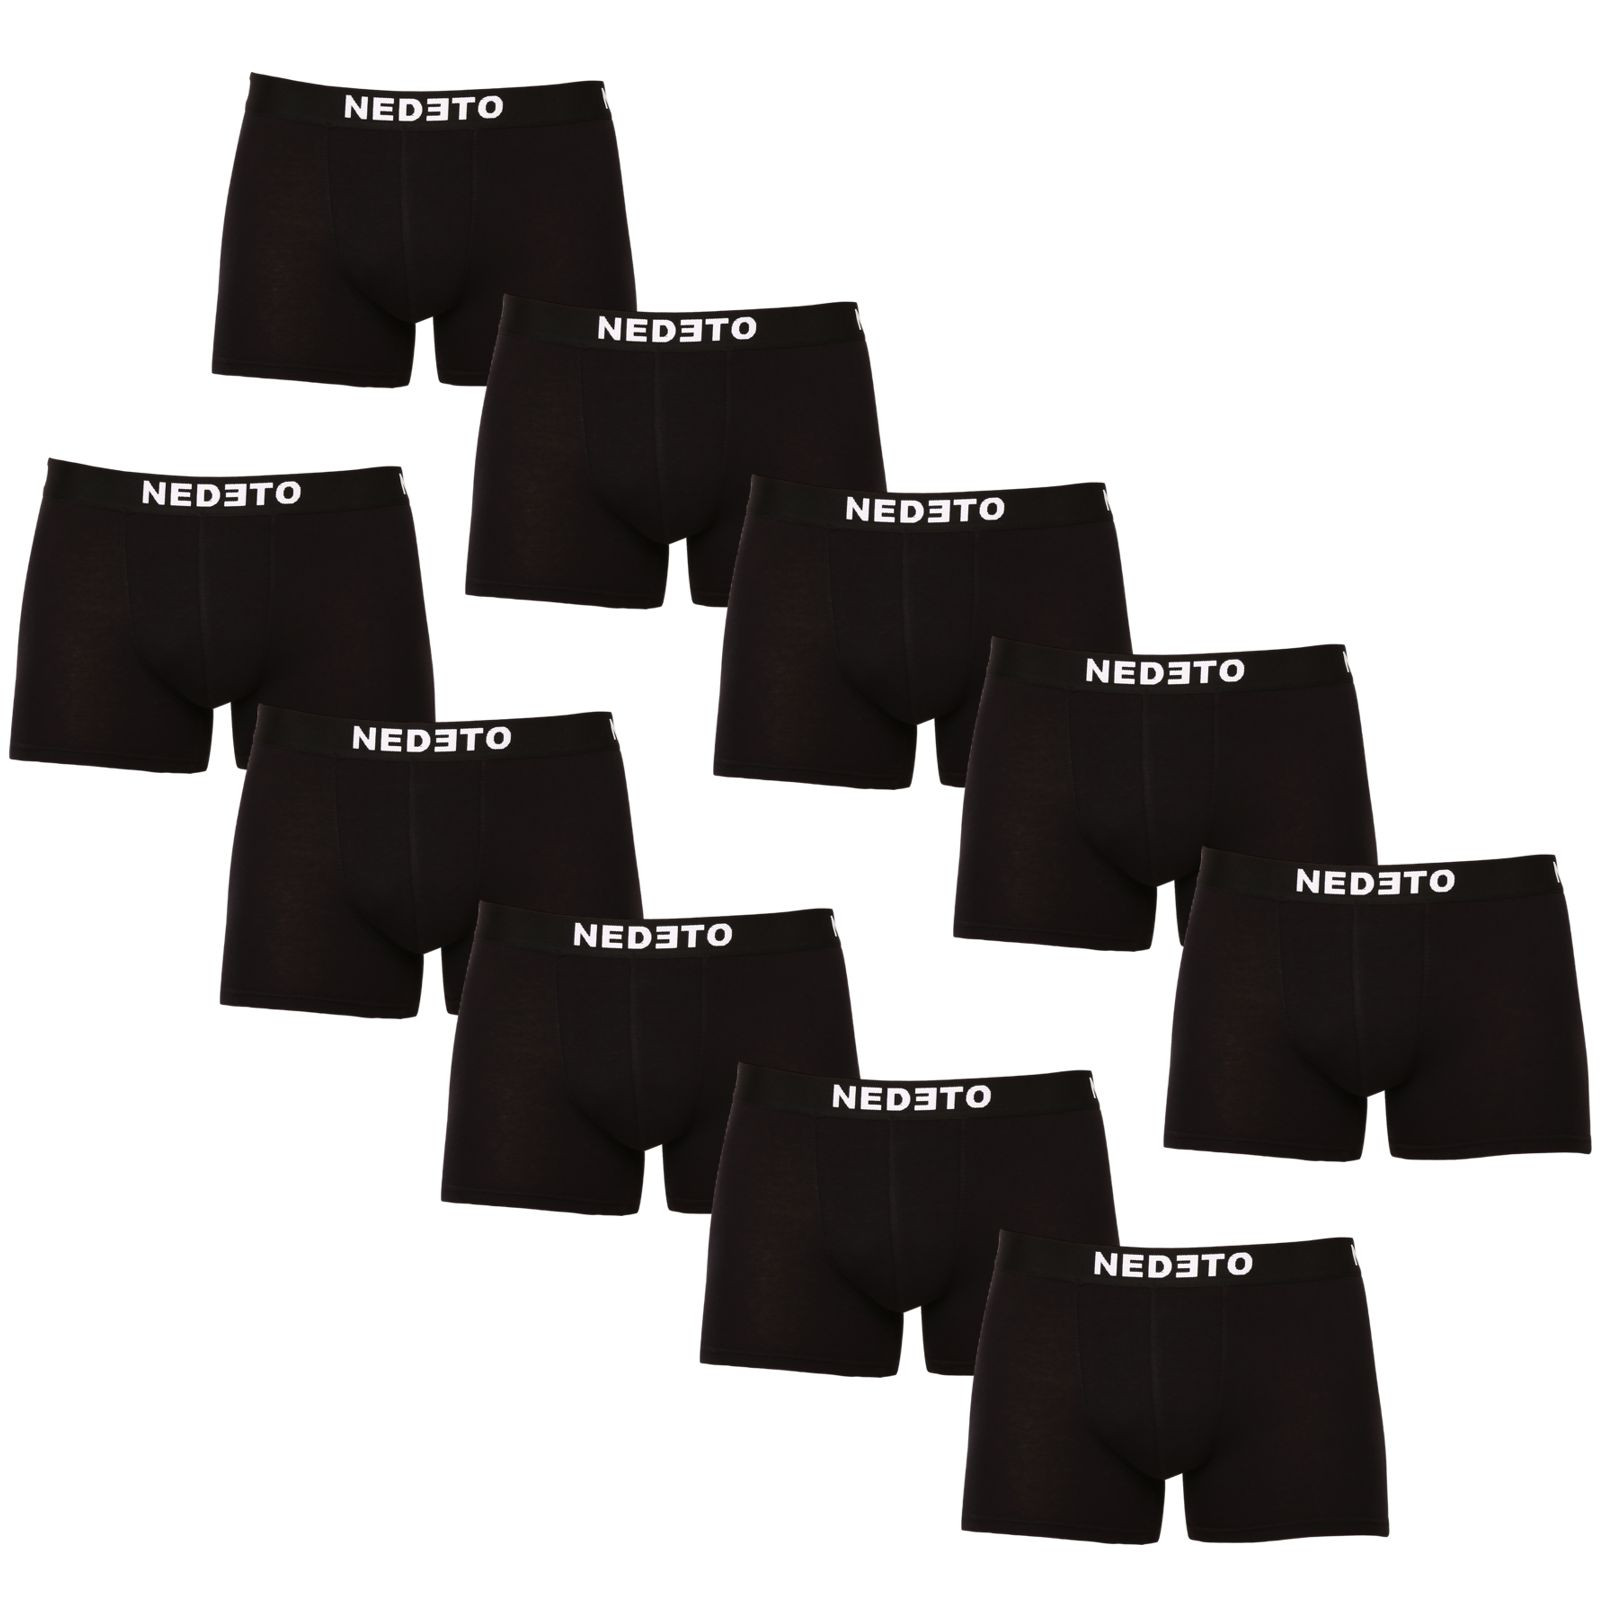 10PACK pánske boxerky Nedeto čierne (10NB001b) 3XL.
Hľadáte kvalitné, ale zároveň cenovo dostupné boxerky?
Boxerky Nedeto sú vyrobené z príjemného materiálu, majú moderný strih, ktorý perfektne padne na každodenné nosenie.